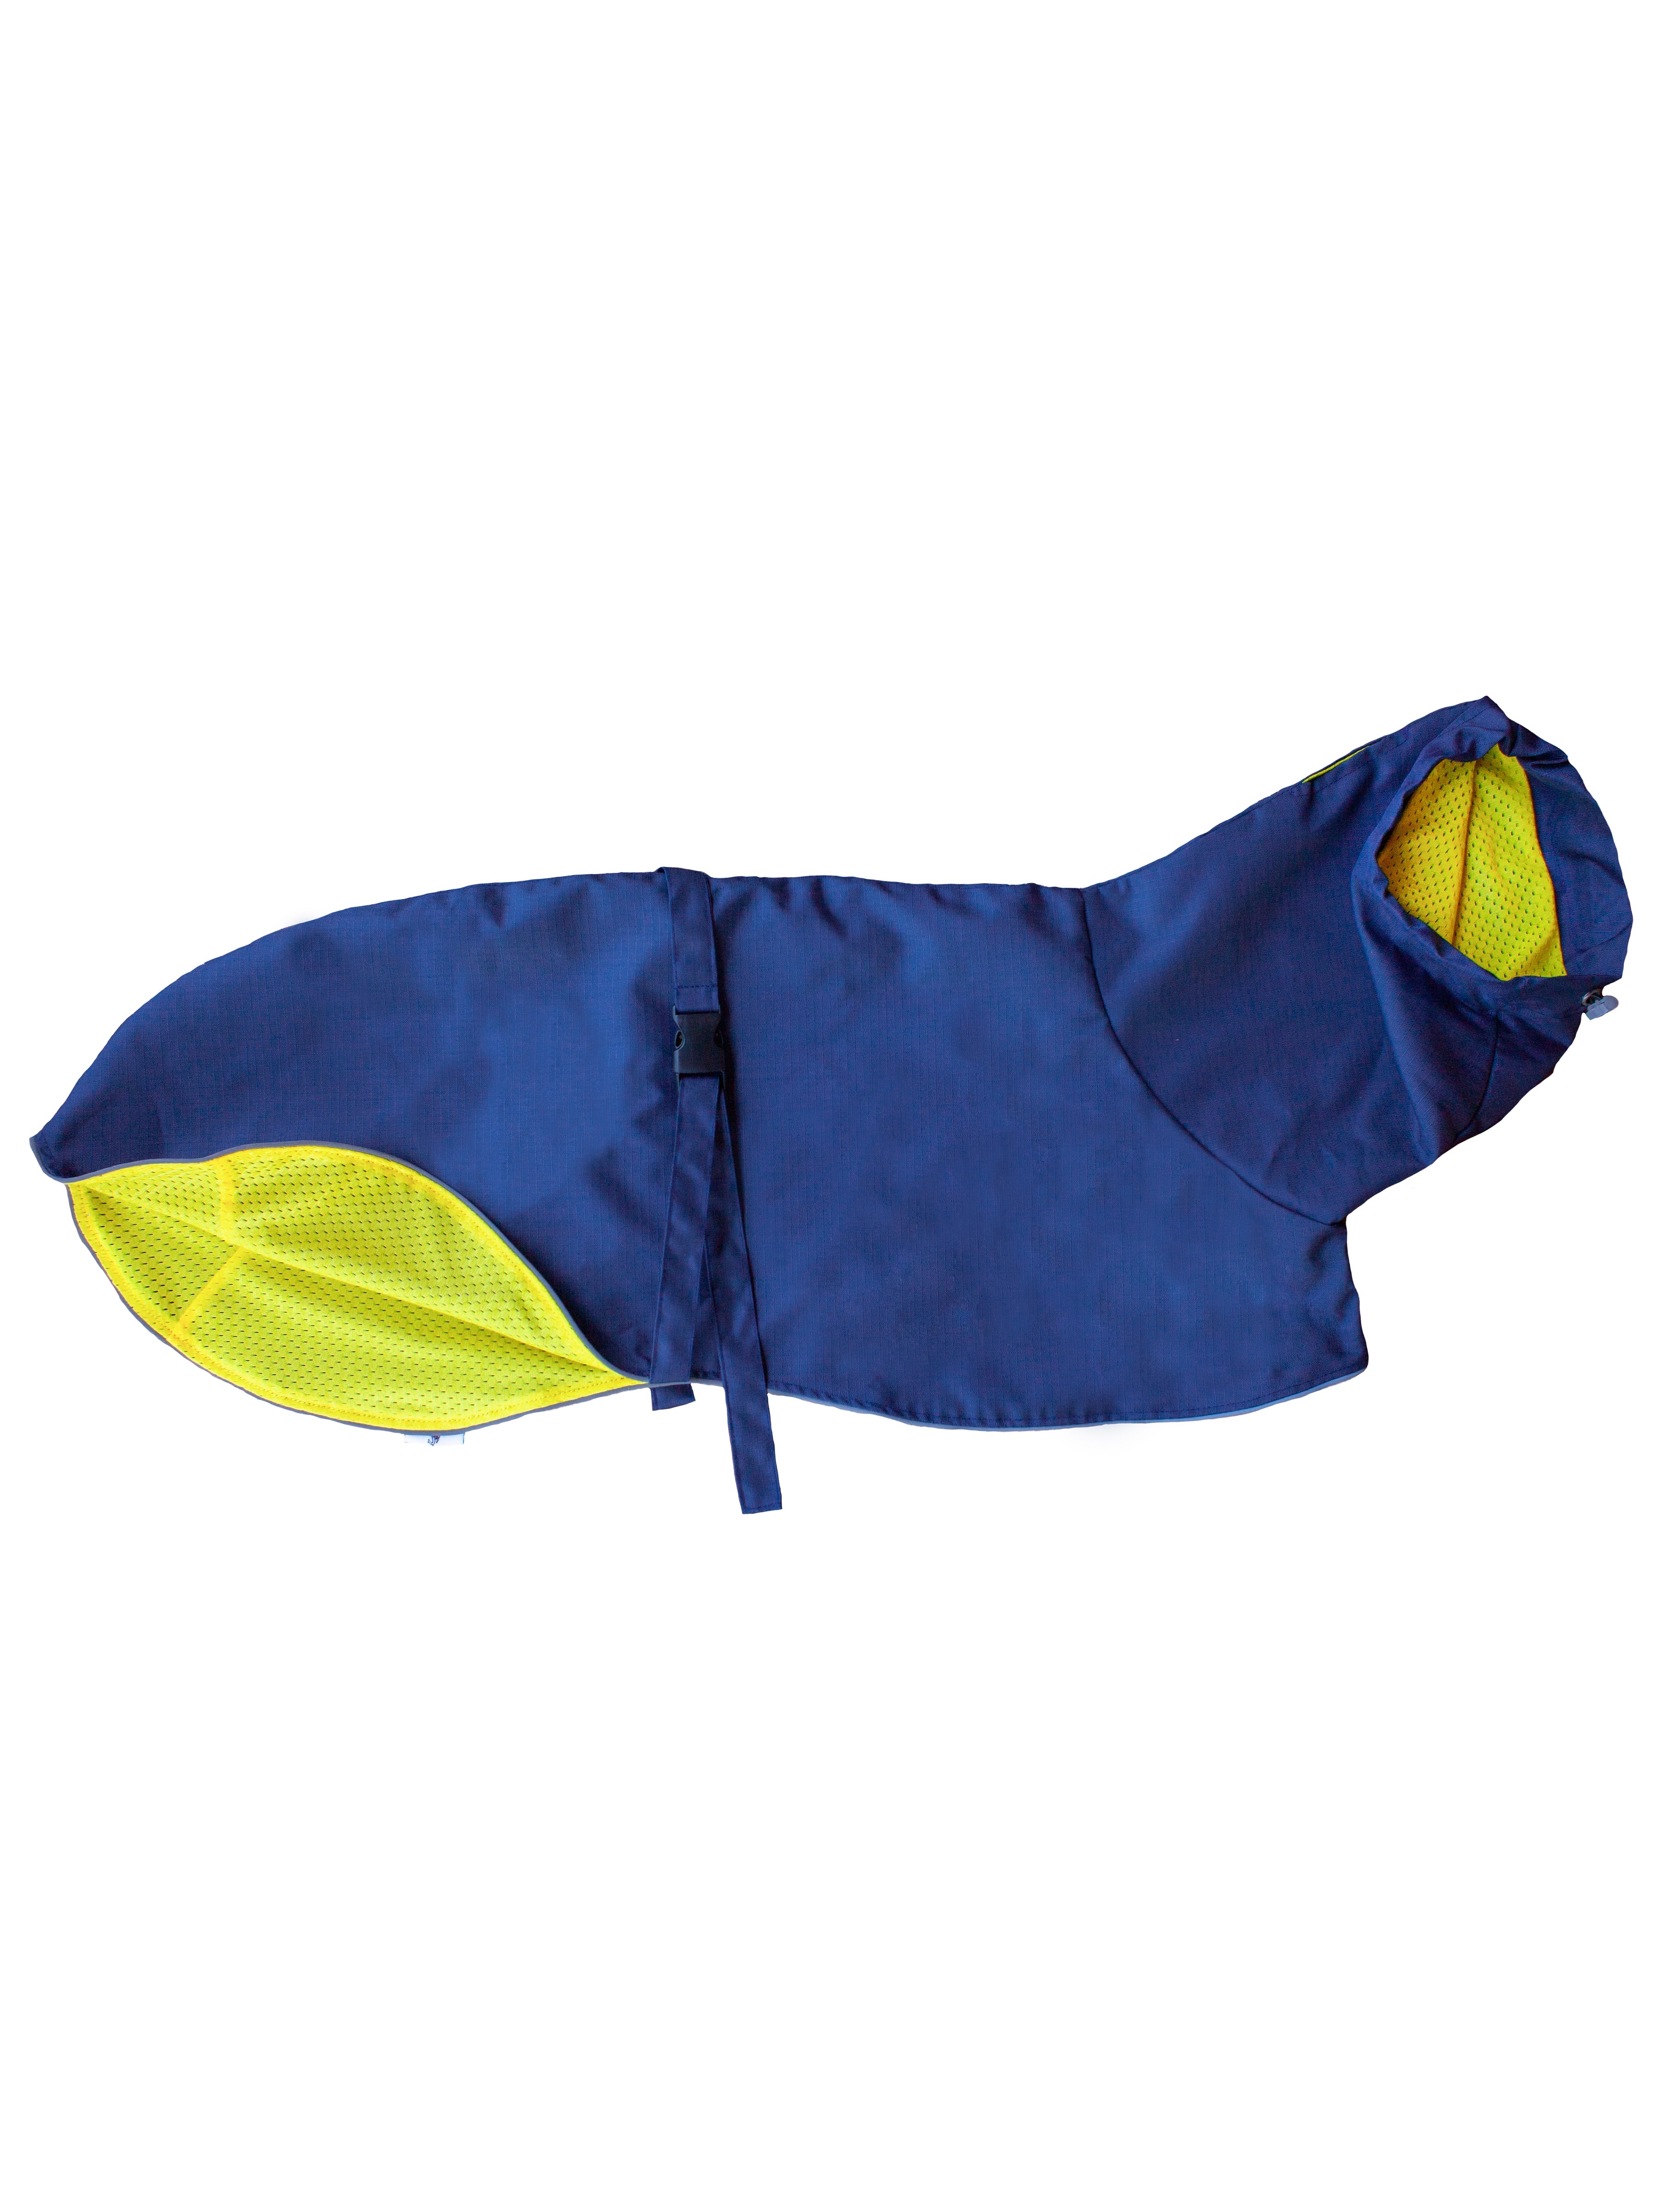 фото Дождевик для собак монморанси уиппет, синий, желтый, длина спины 53 см